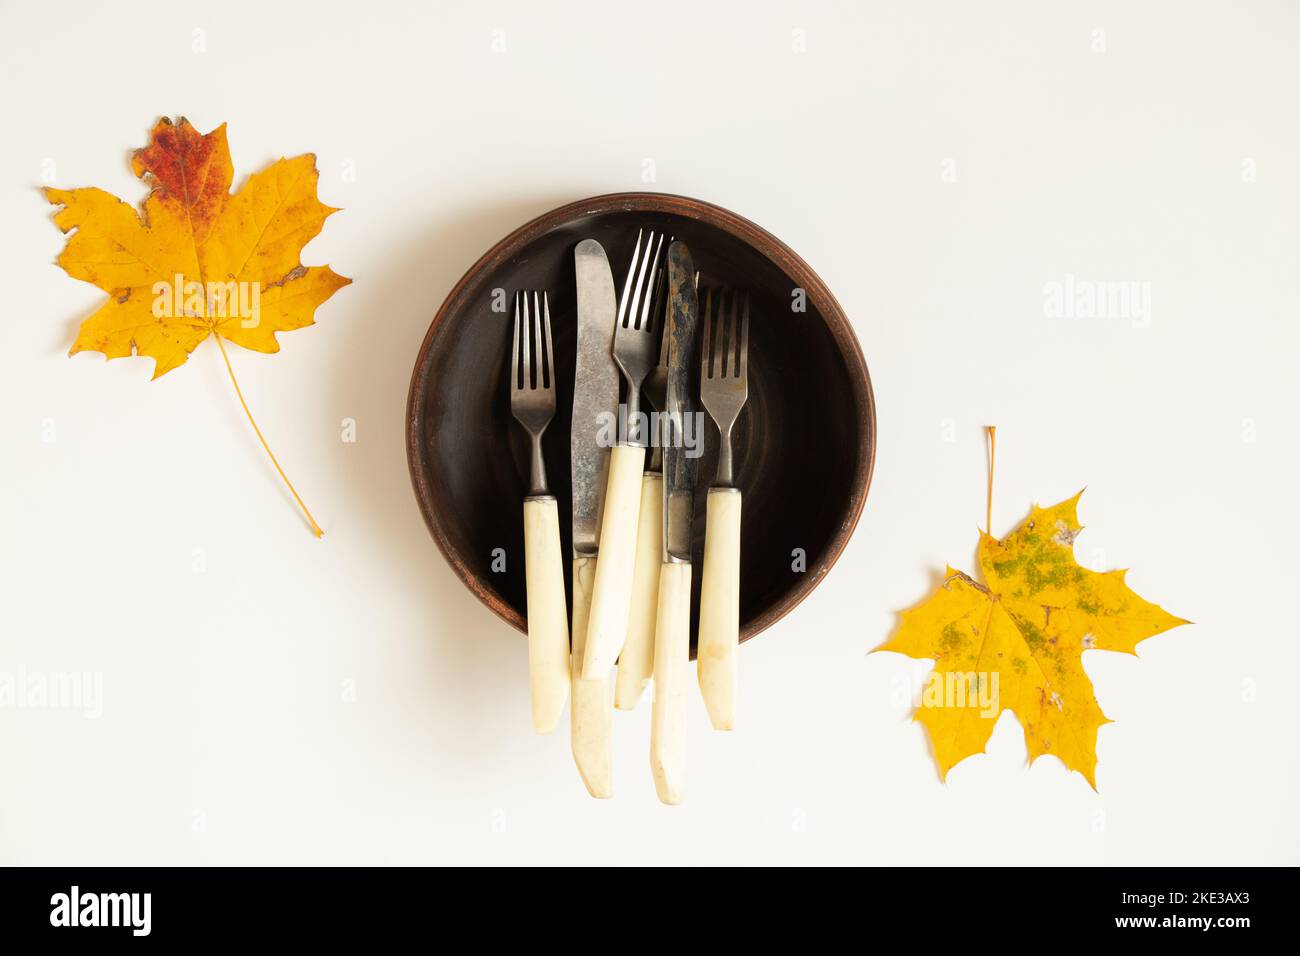 Les couteaux et les fourchettes se trouvent dans une plaque en argile profonde, qui se trouve sur un fond blanc en automne, les feuilles d'érable sèches sont en gros plan Banque D'Images